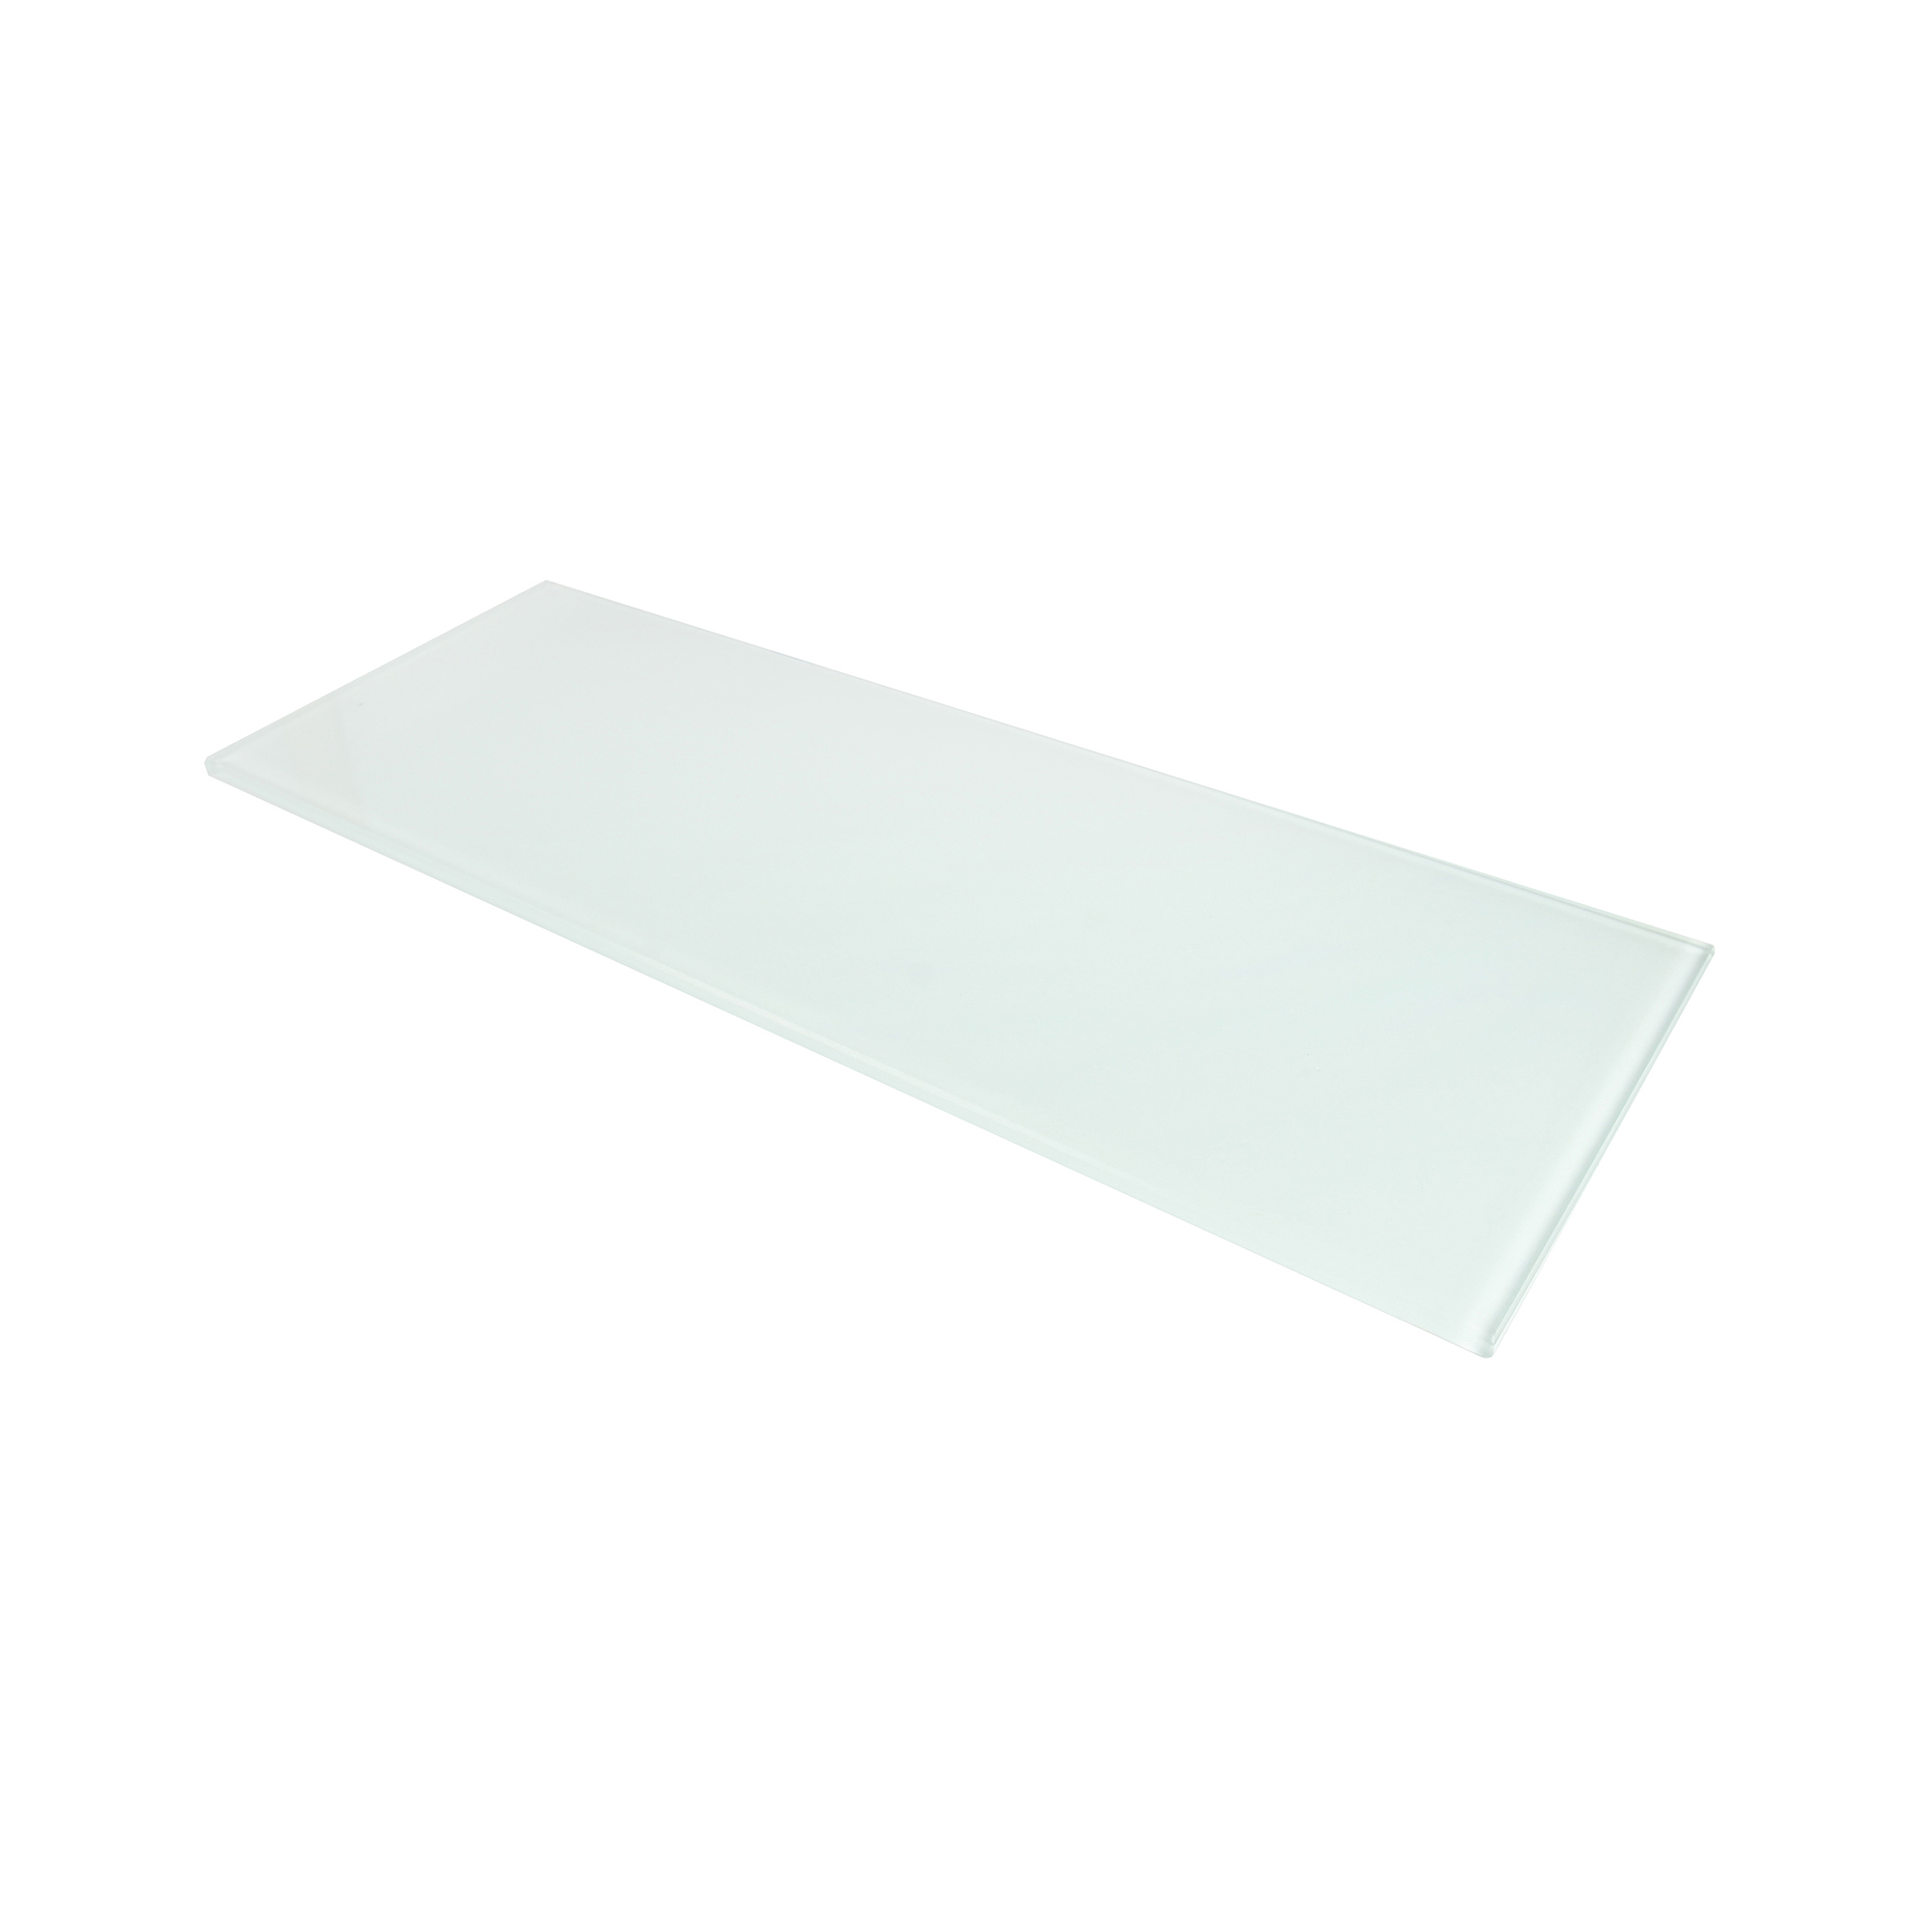 Étagère rectangulaire en verre blanche | Mesures 400*6*150mm | Épaisseur de l'étagère : 6 mm | 1 unité